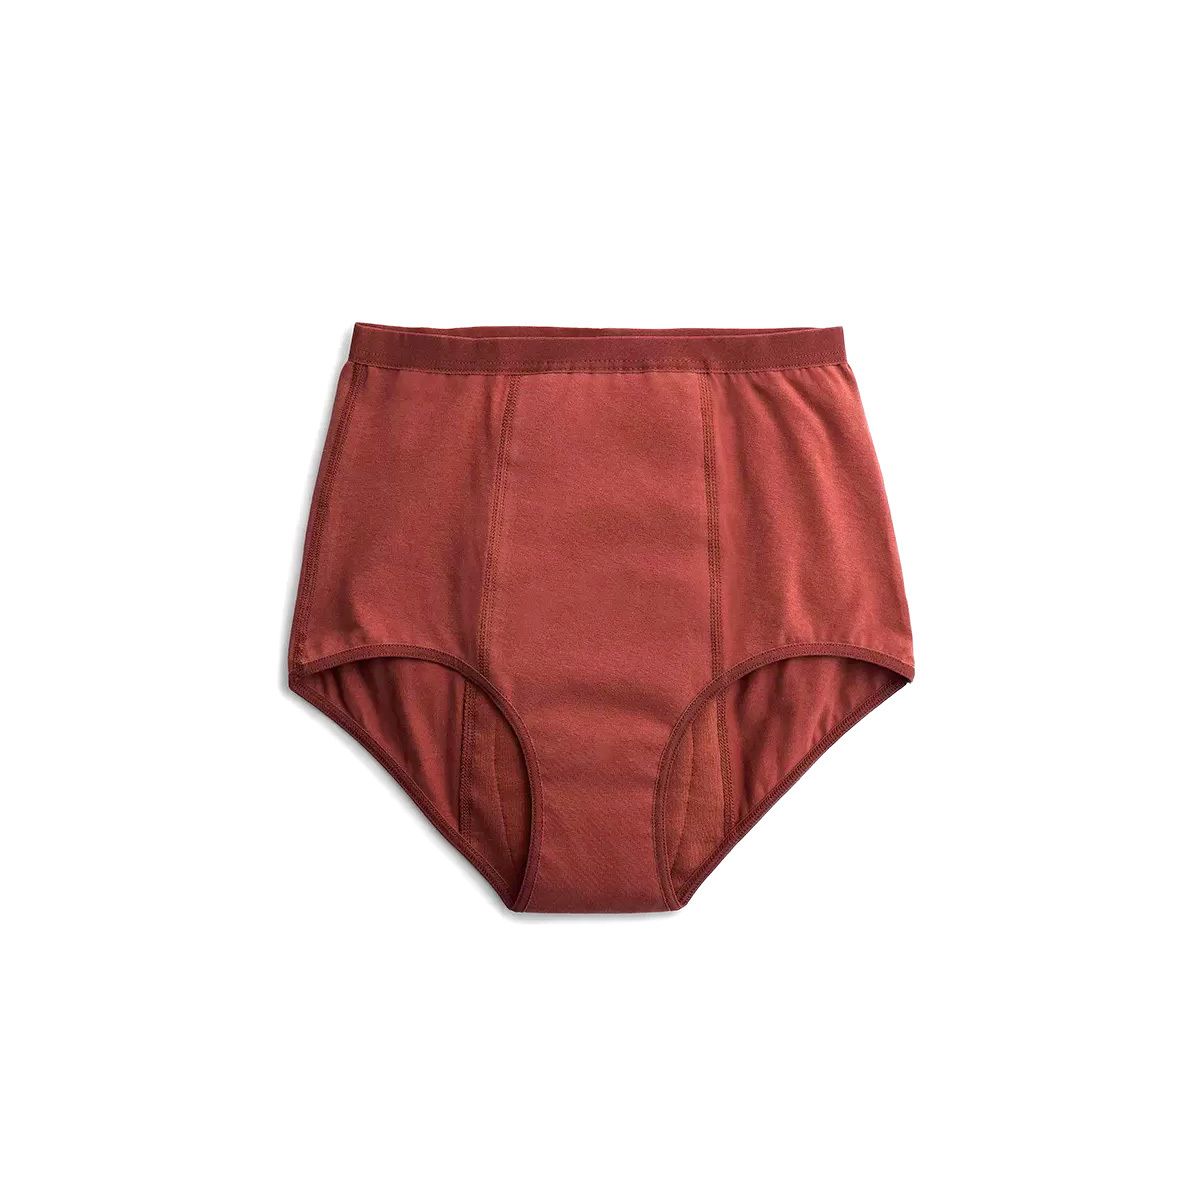 Imse Red High Waist Period Underwear - Heavy Flow - Ecco Verde